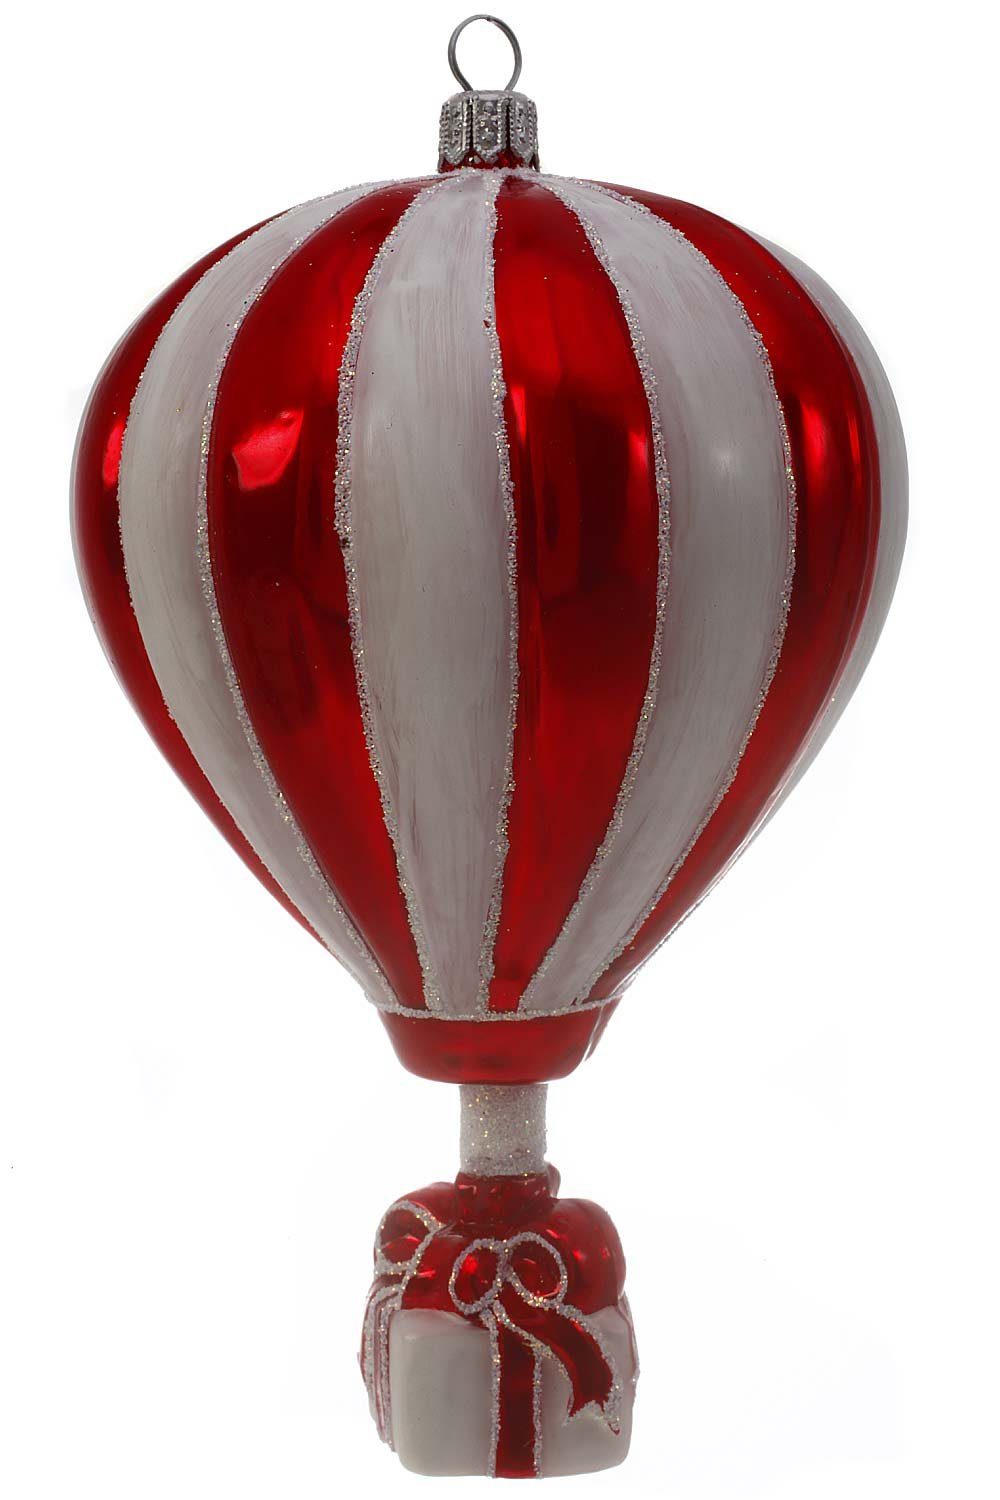 Christbaumschmuck - handdekoriert - Weihnachtskontor mundgeblasen Dekohänger Heißluftballon, Hamburger